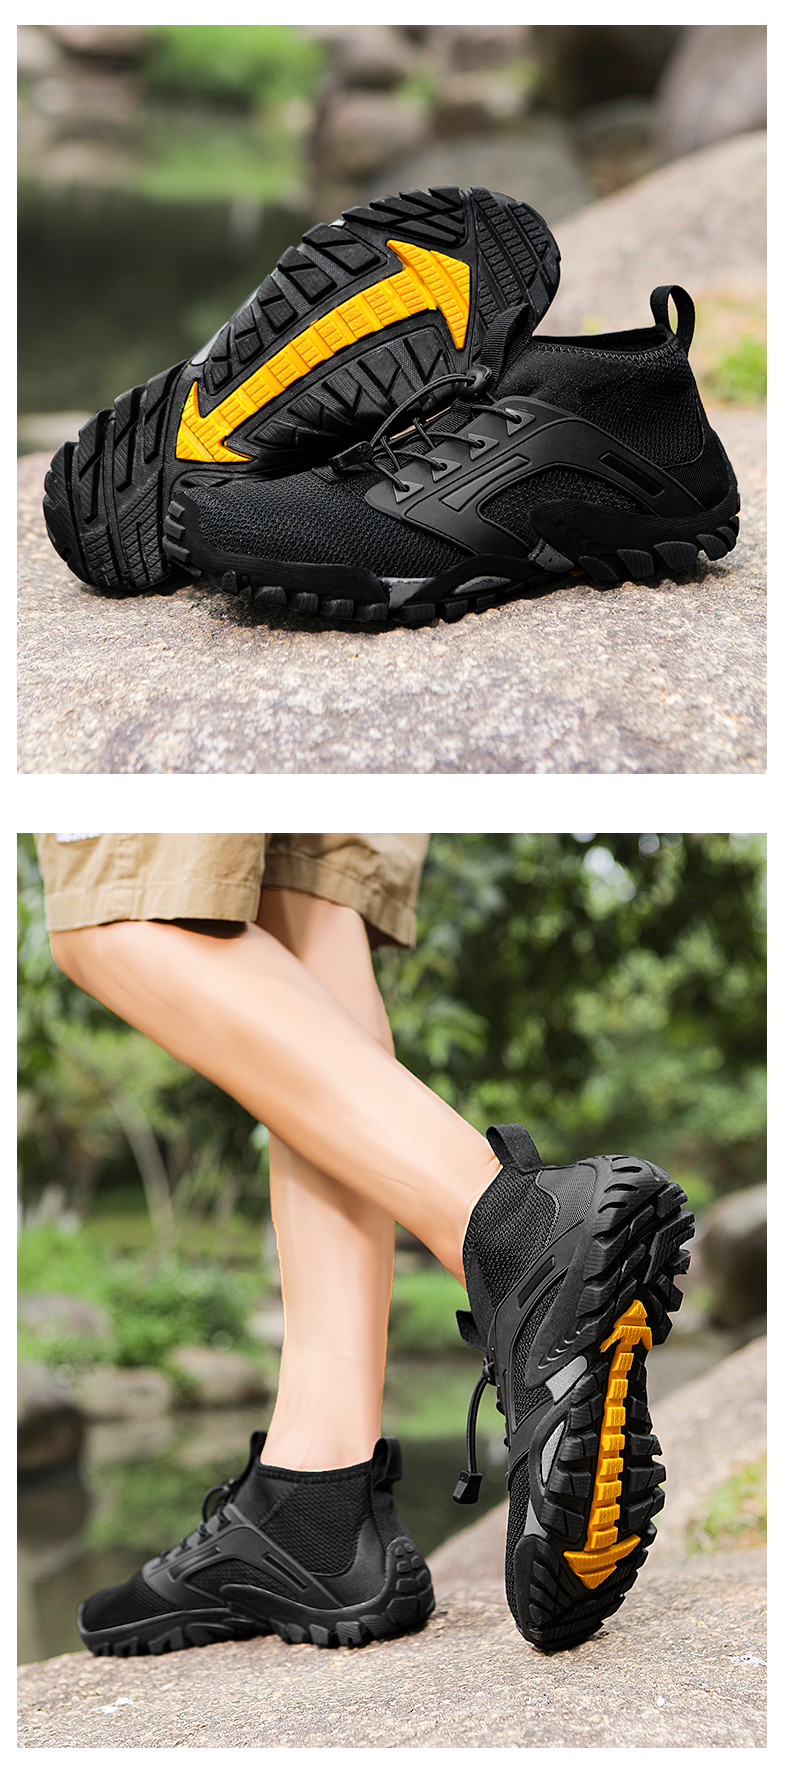 come4buy.com-Տղամարդկանց արշավային կոշիկներ՝ արագ չորացող հակասայթաքուն